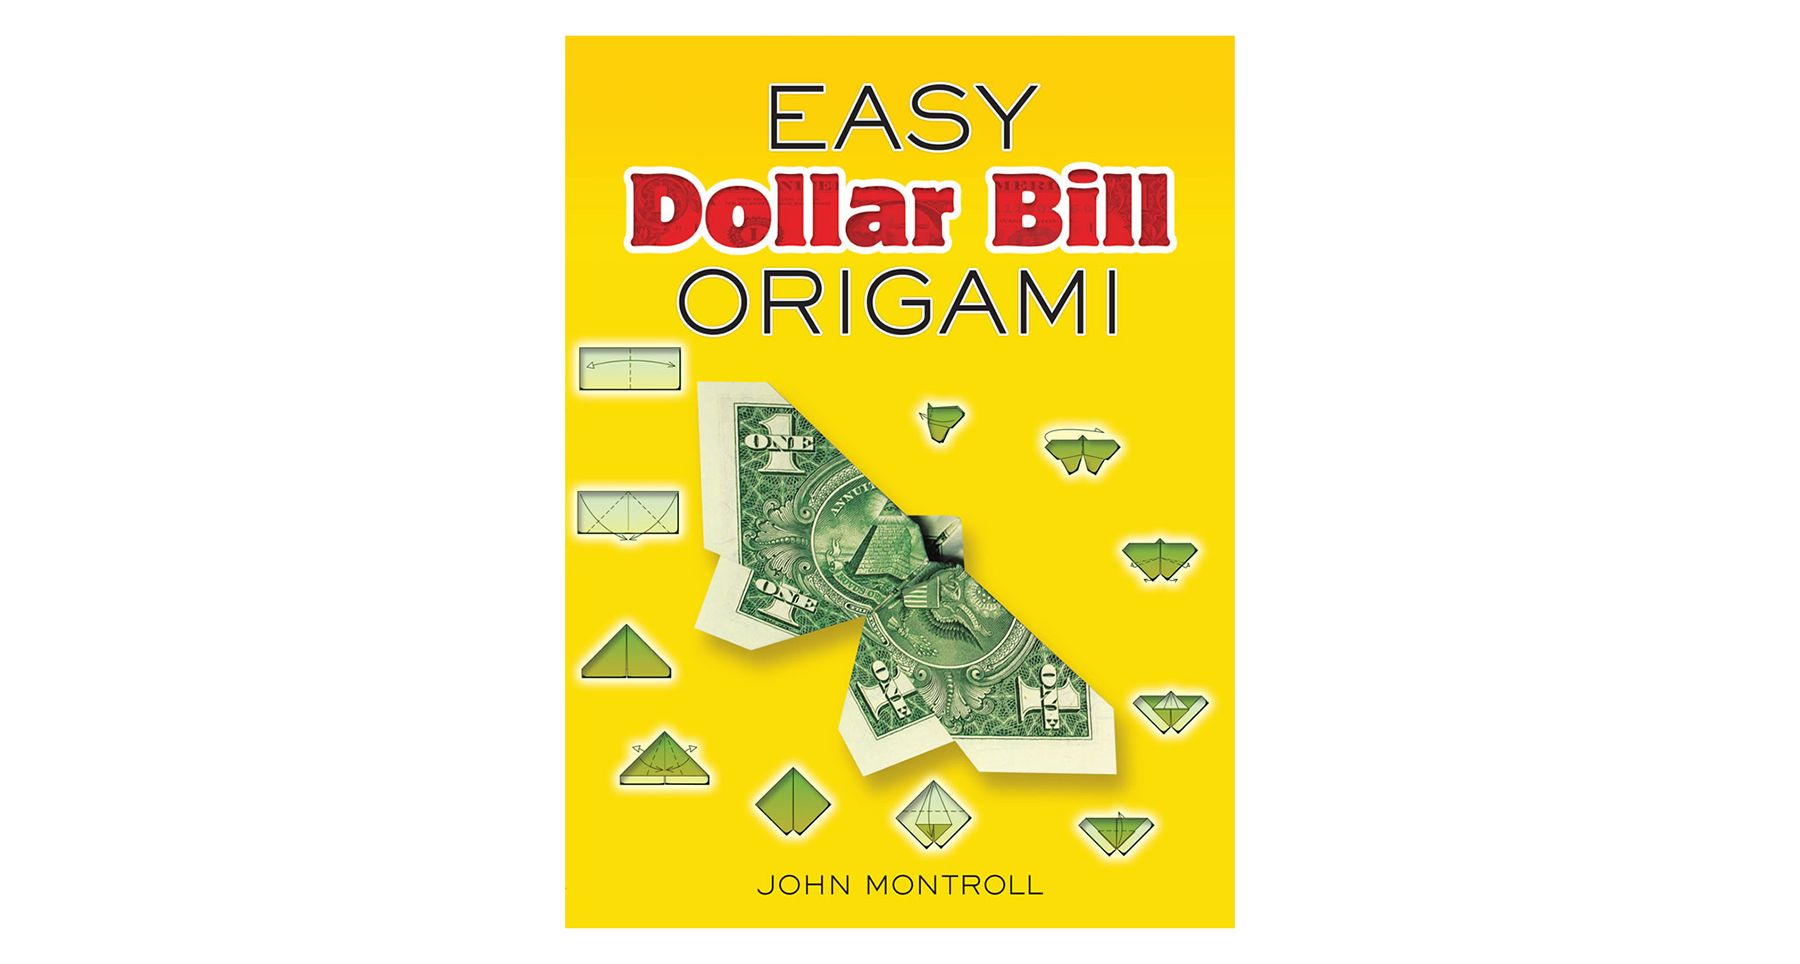 Bille Dollar Éasca Origami